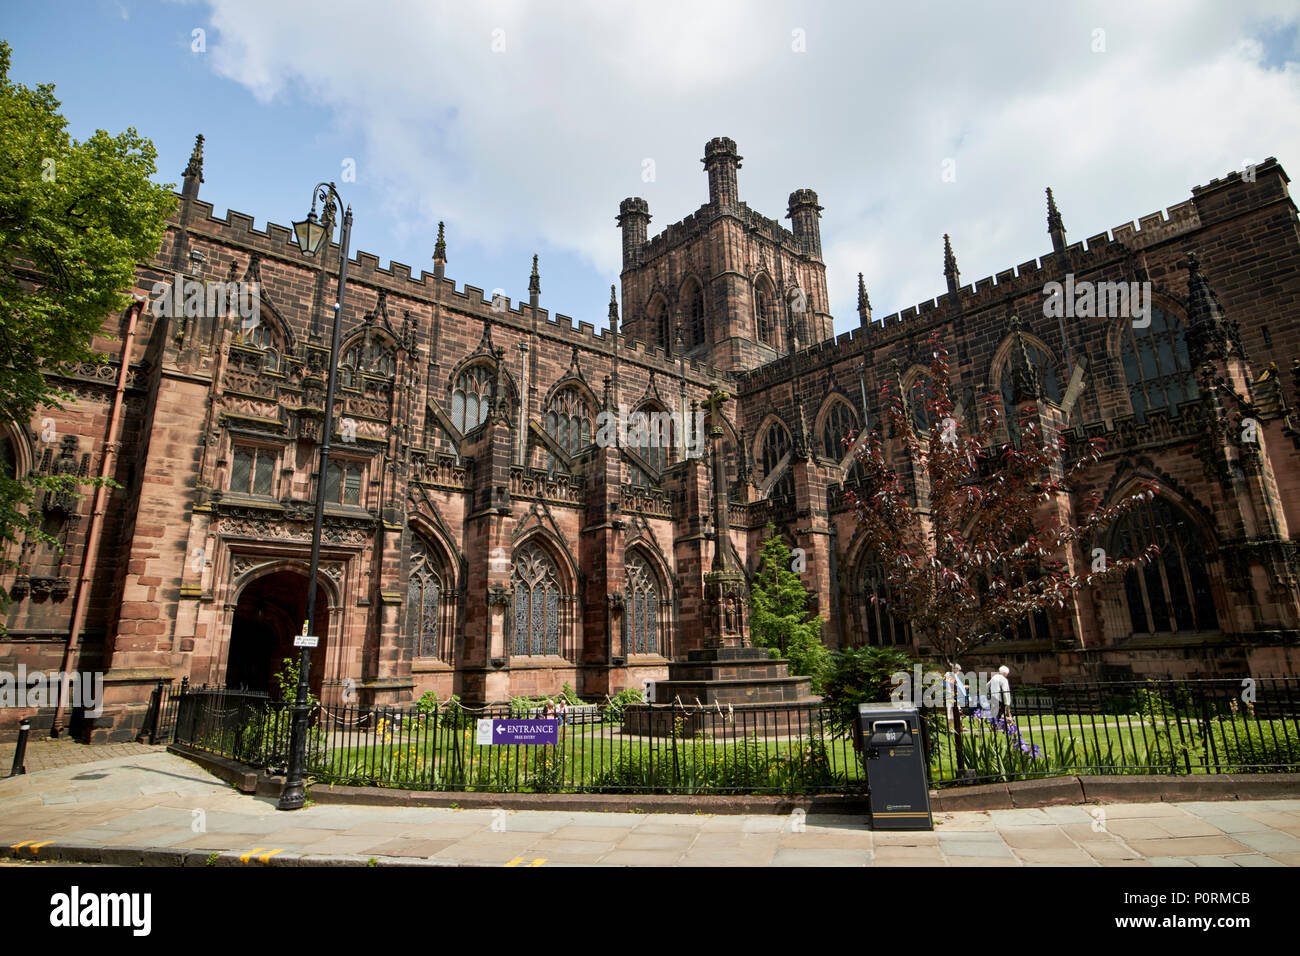 La cathédrale de Chester cathédrale de l'Église du Christ et de la Bienheureuse Vierge Marie chester Cheshire England UK Banque D'Images